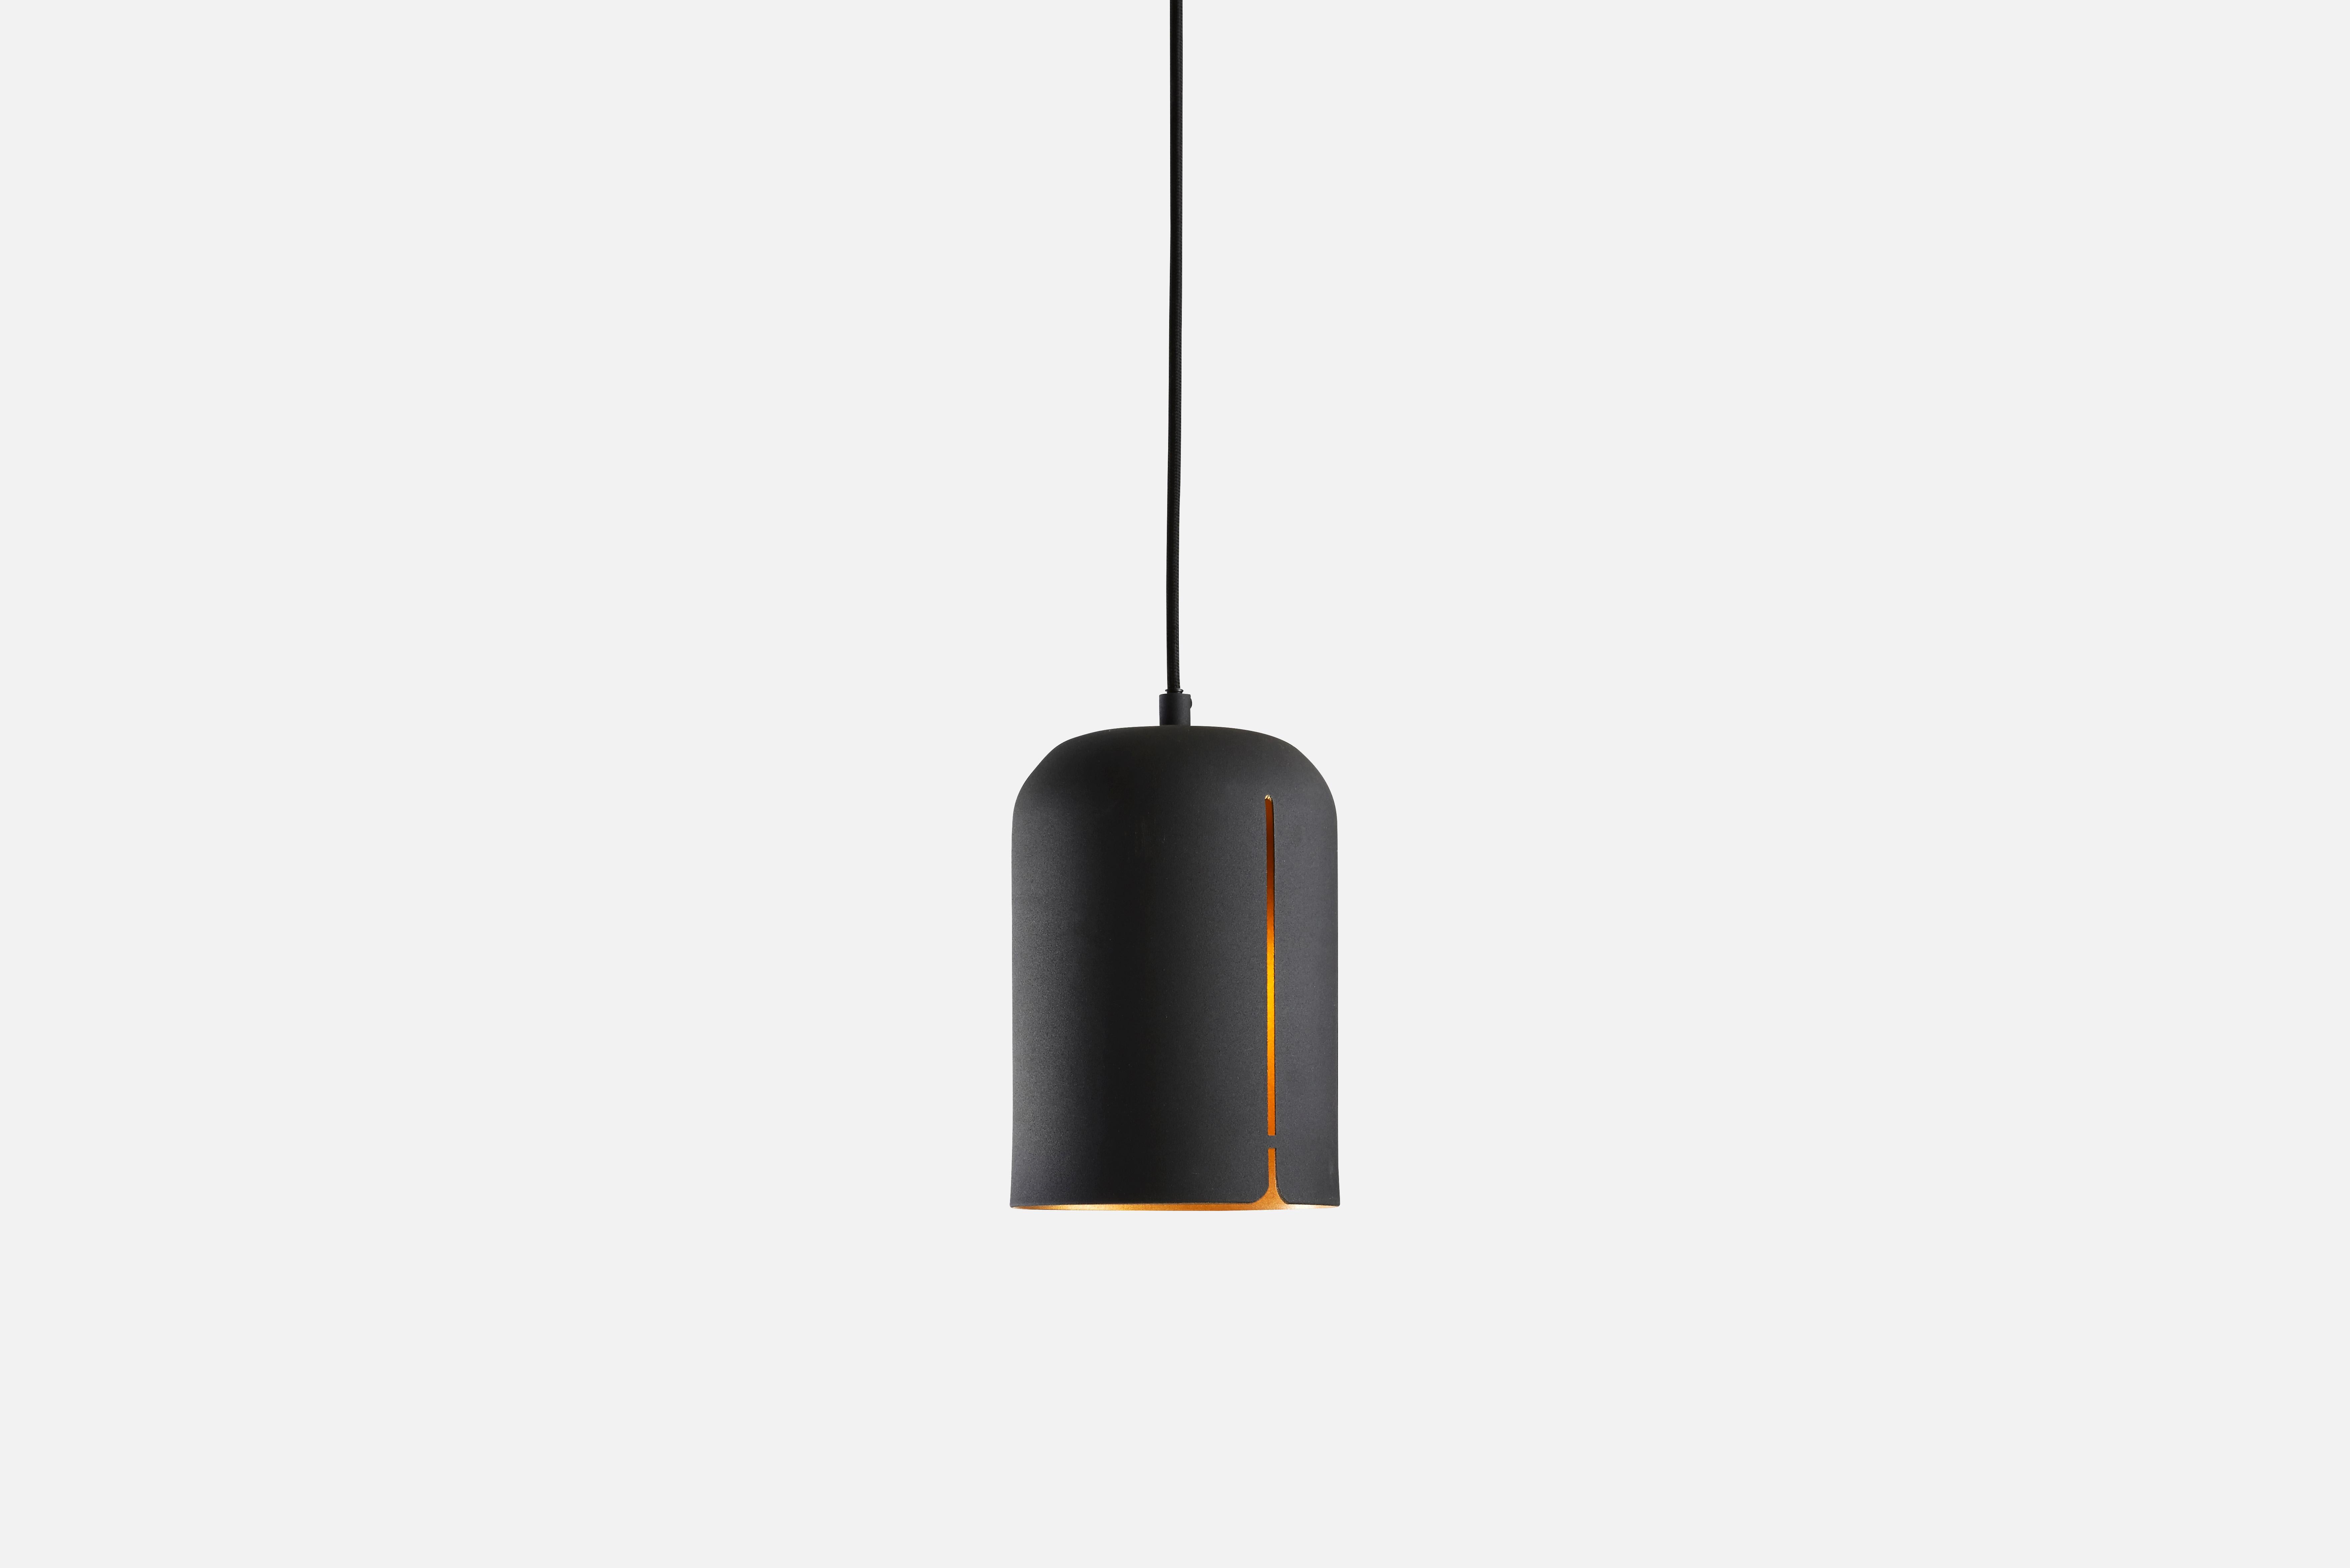 Lampe suspendue Short Gap de Nur Design
Matériaux : Métal.
Dimensions : D 14 x H 20 cm

NUR design est un studio de design danois qui se concentre sur les traditions nordiques et s'efforce de créer un design classique et fonctionnel. En allemand, le